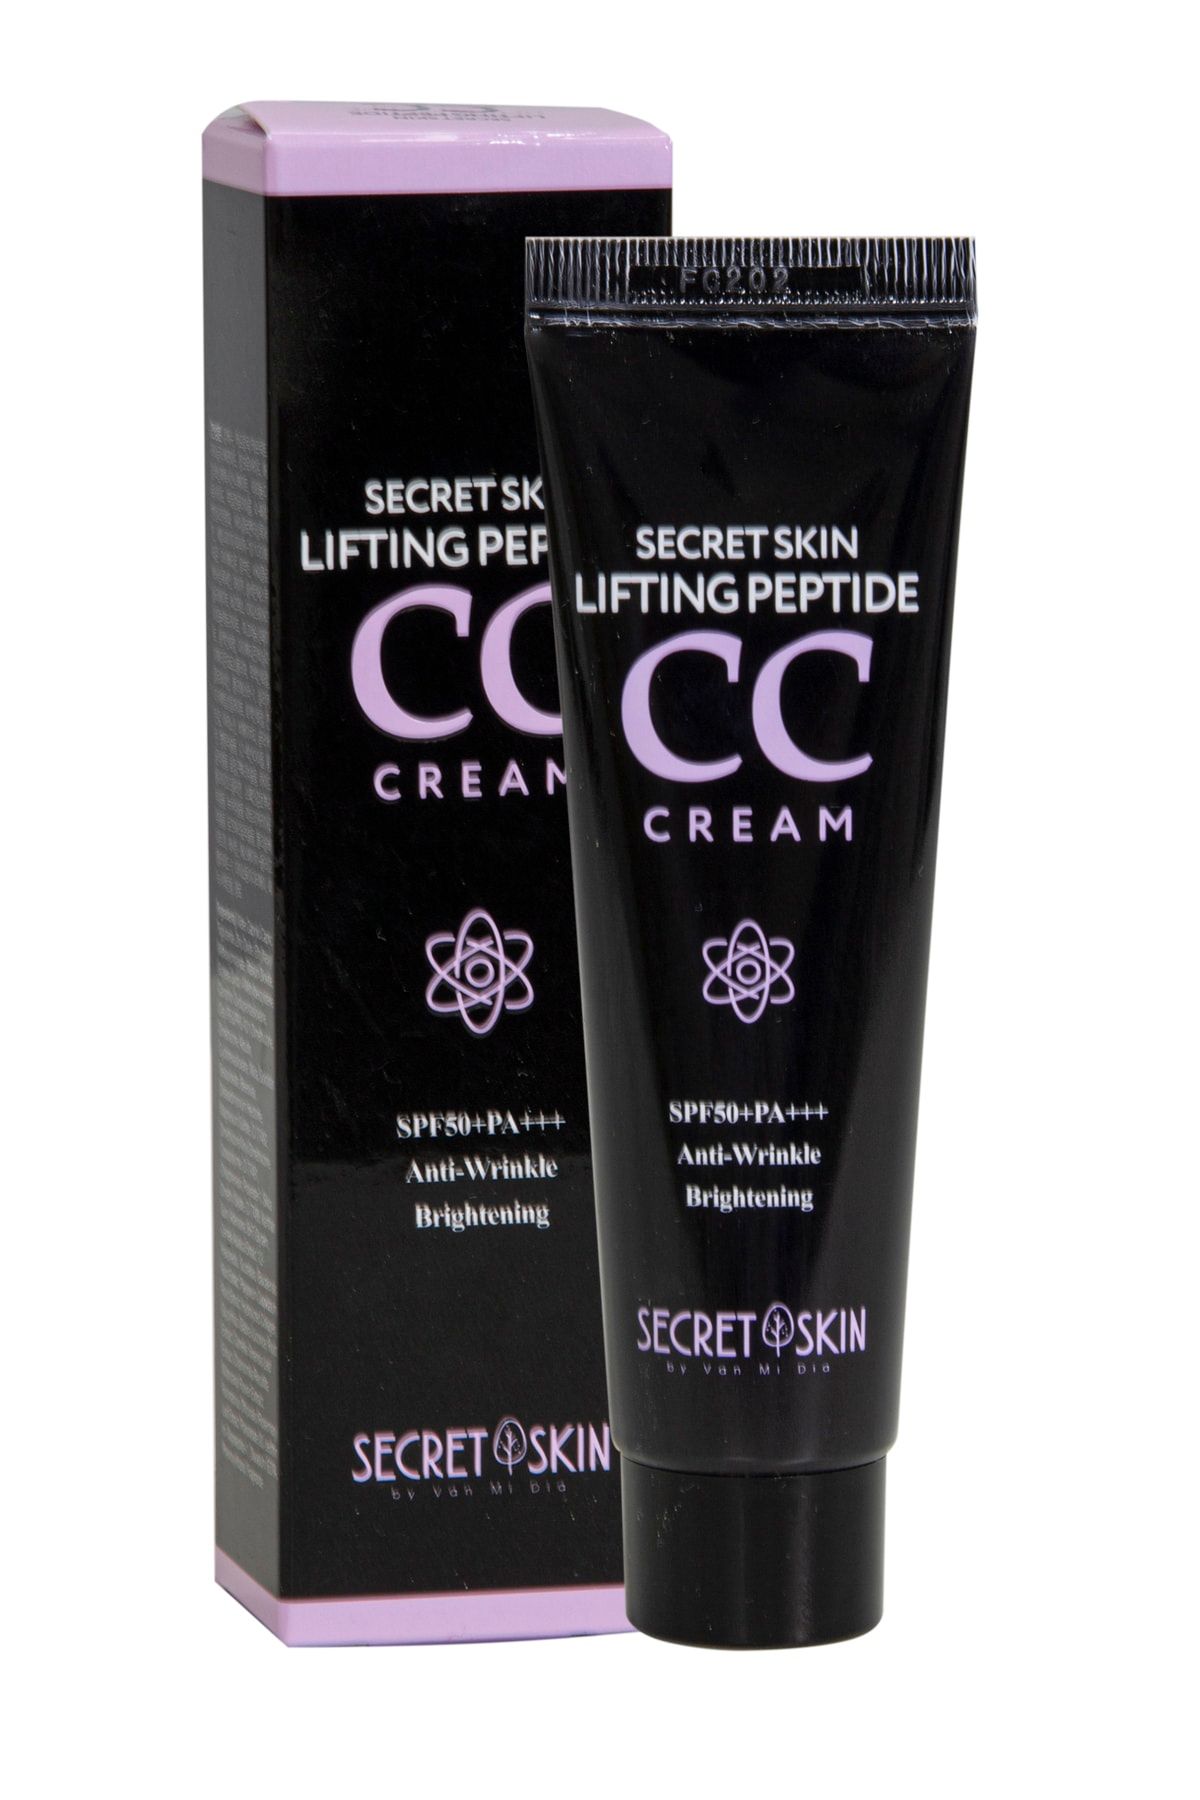 Secret Skin Kırışıklık Karşıtı, Parlatıcı, Güneş Koruyuculu Cc Krem Lifting Peptide Cc Cream 30ml